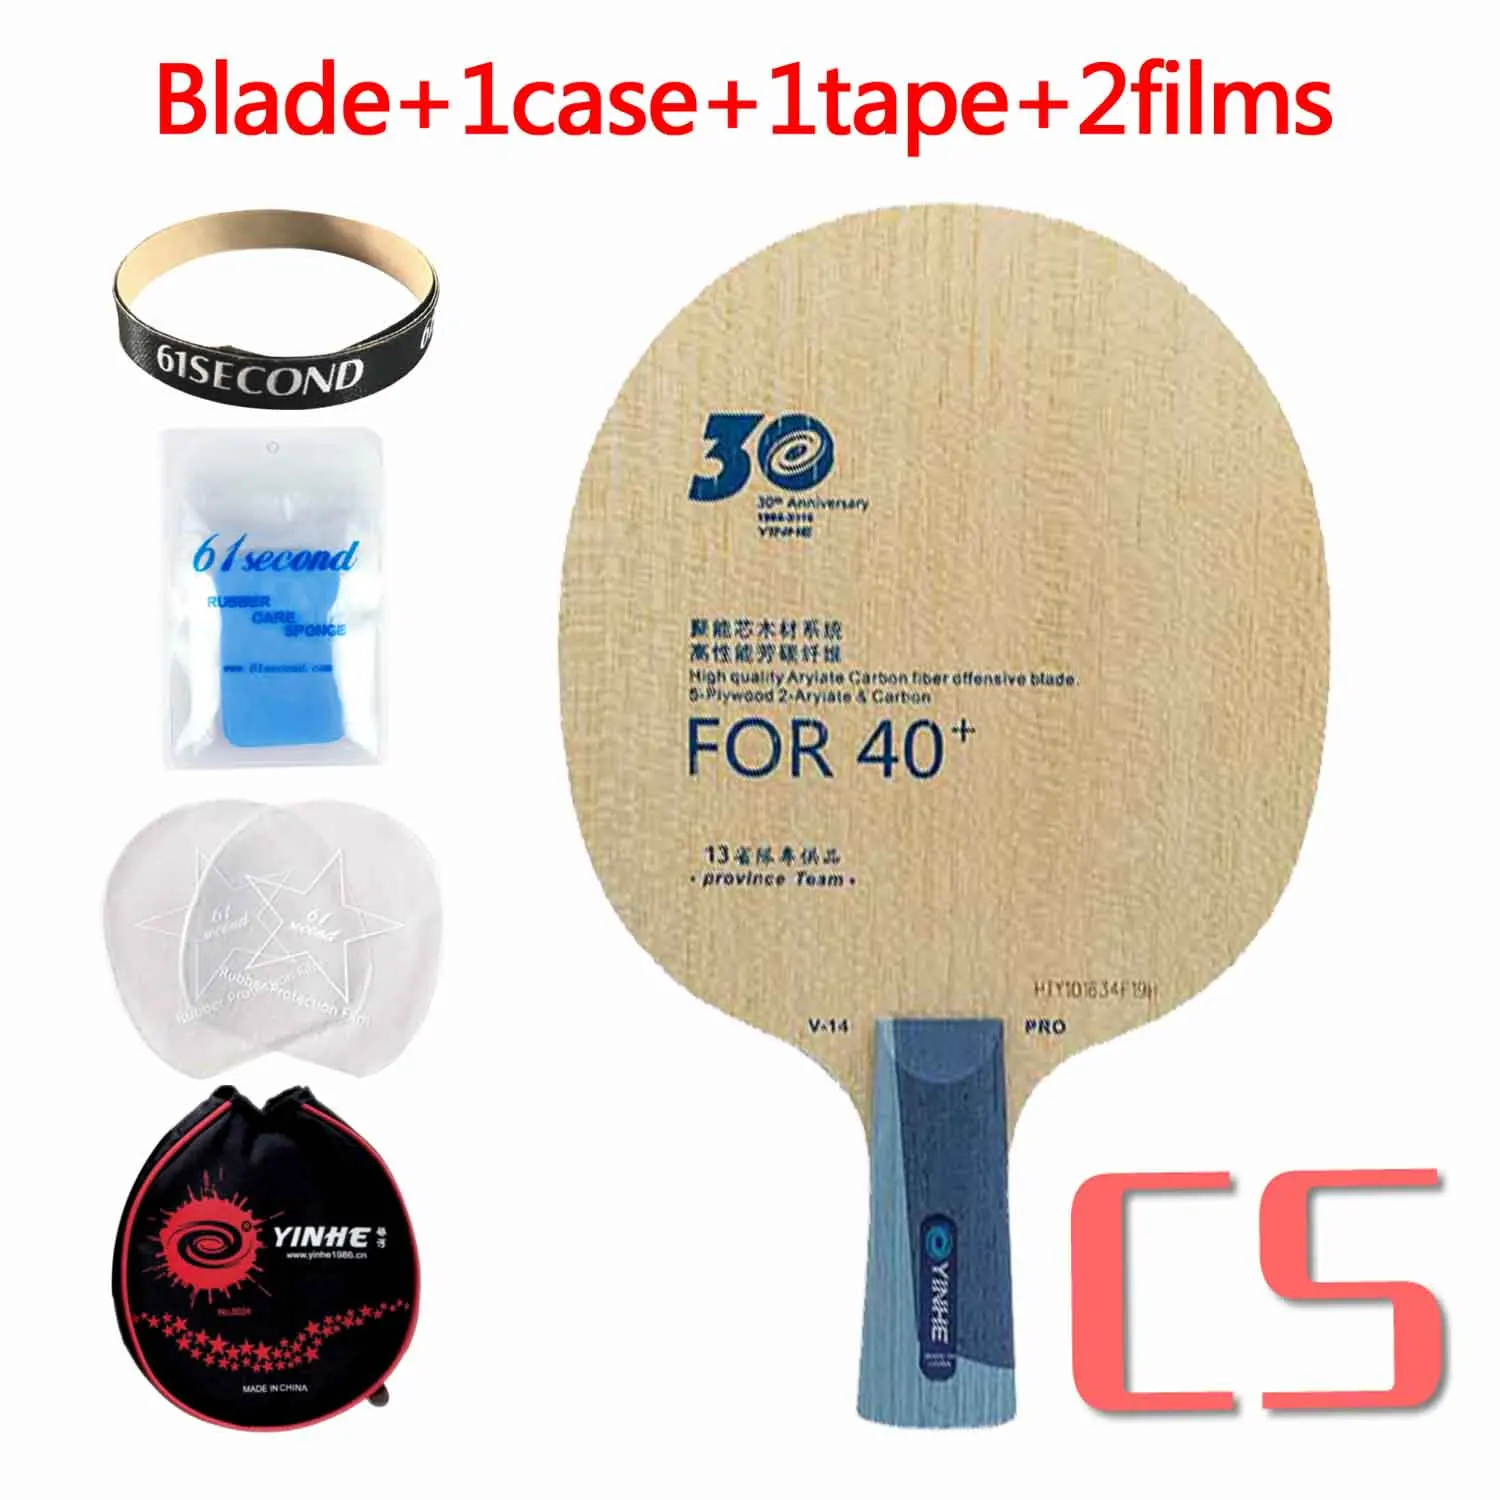 Yinhe – lame de tennis de table 30e anniversaire, Version pro V14 pro,  nouveau matériau 40 +